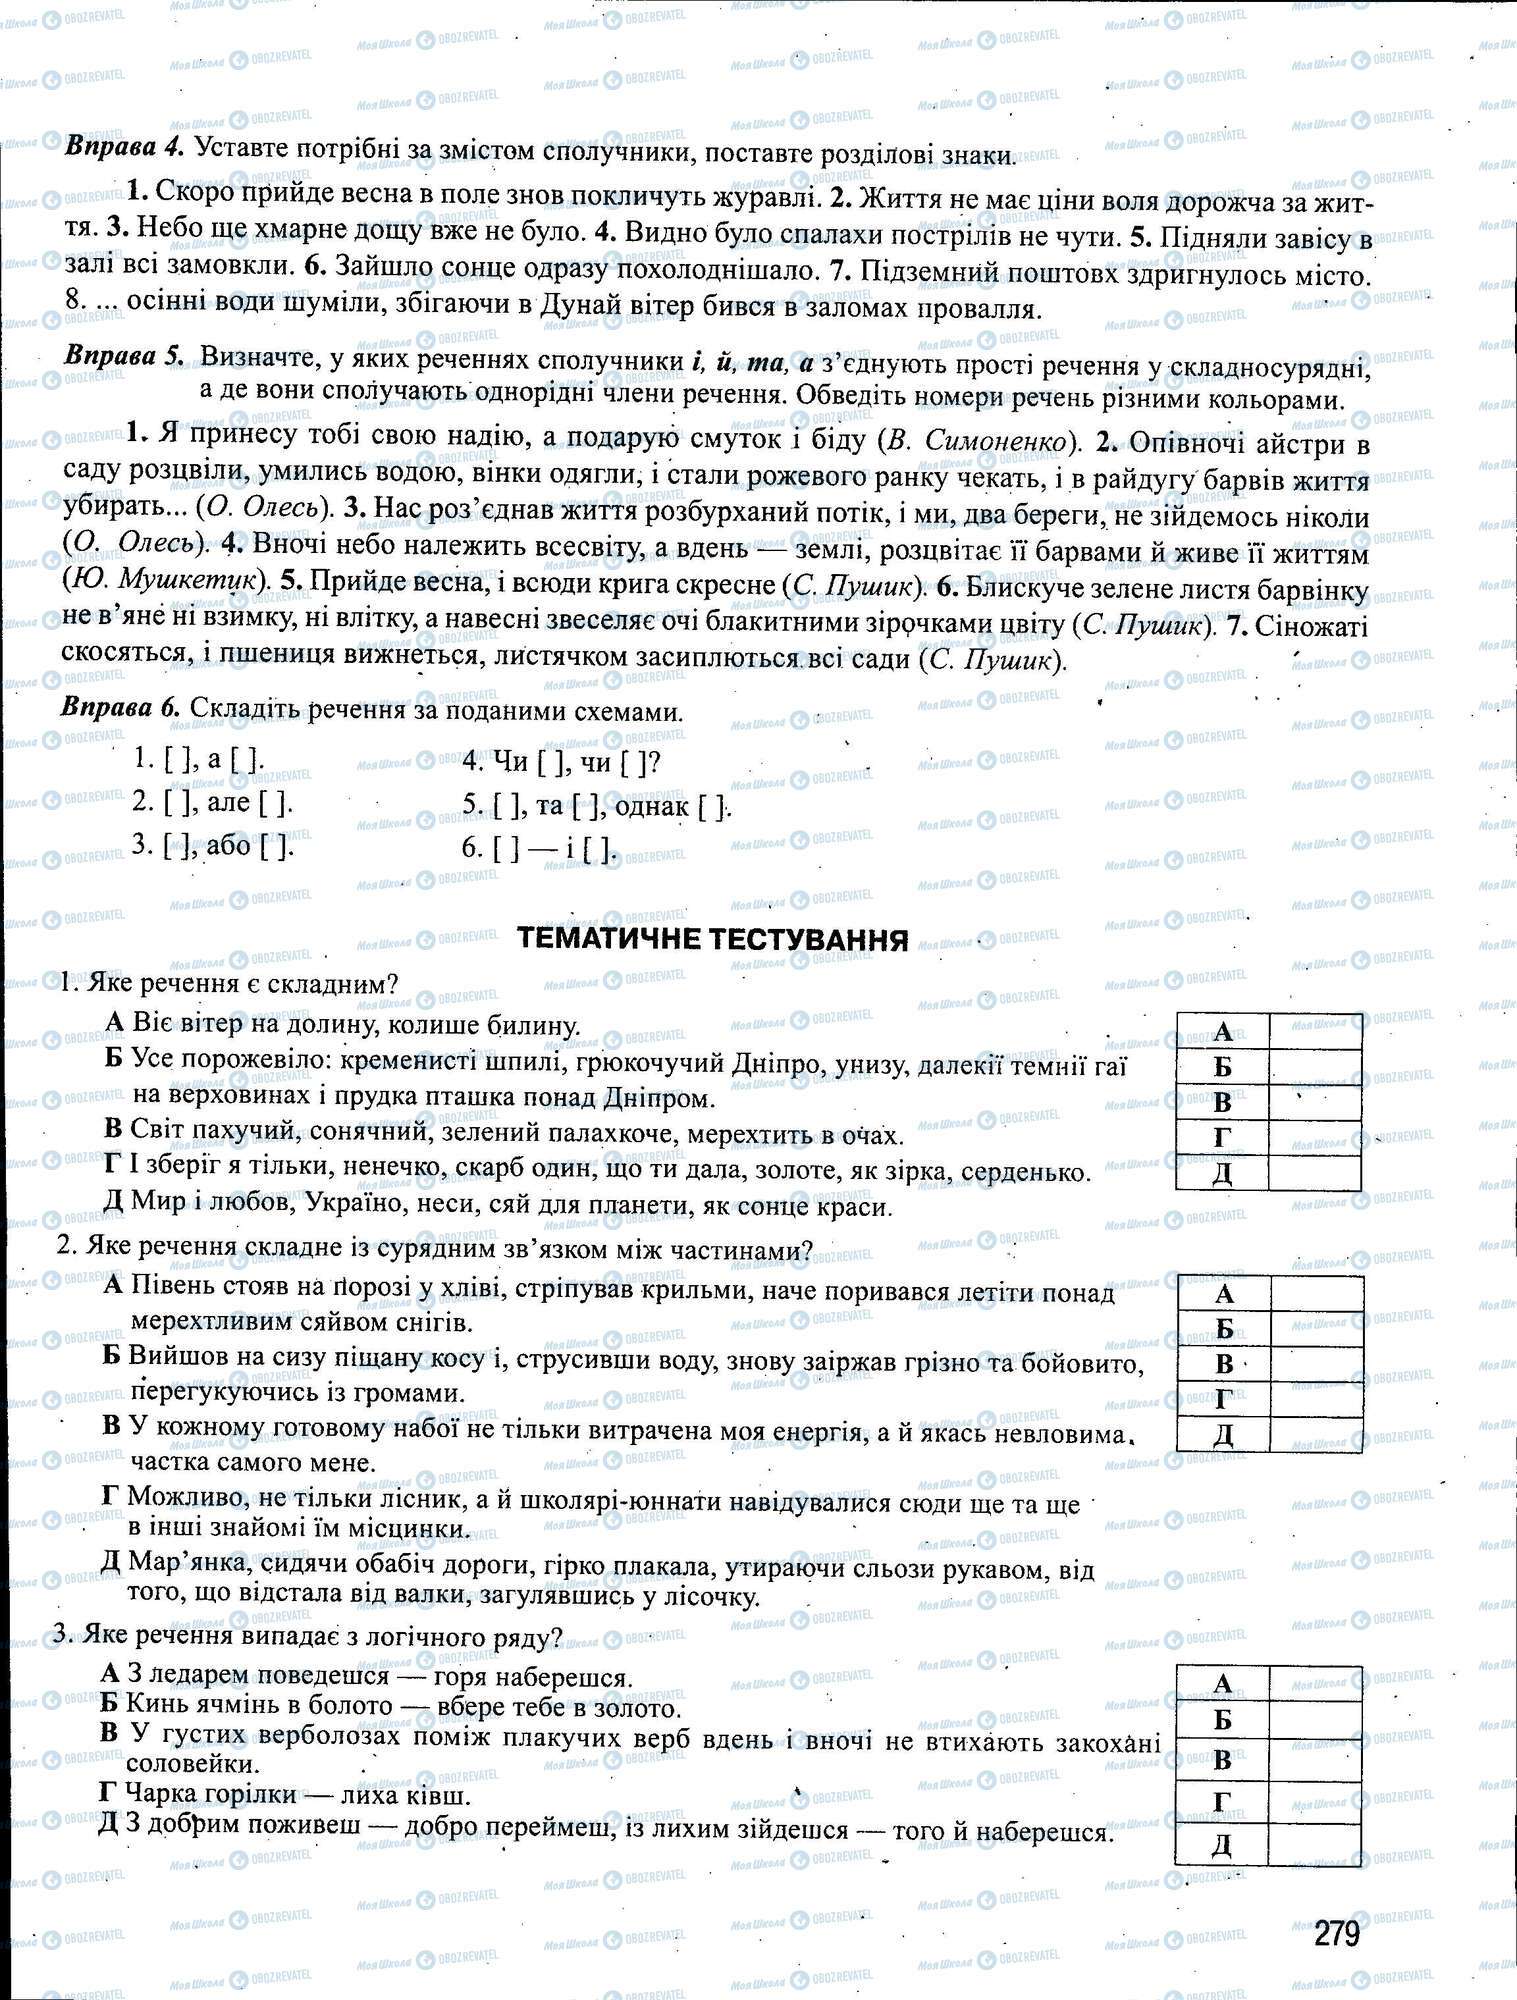 ЗНО Укр мова 11 класс страница 279